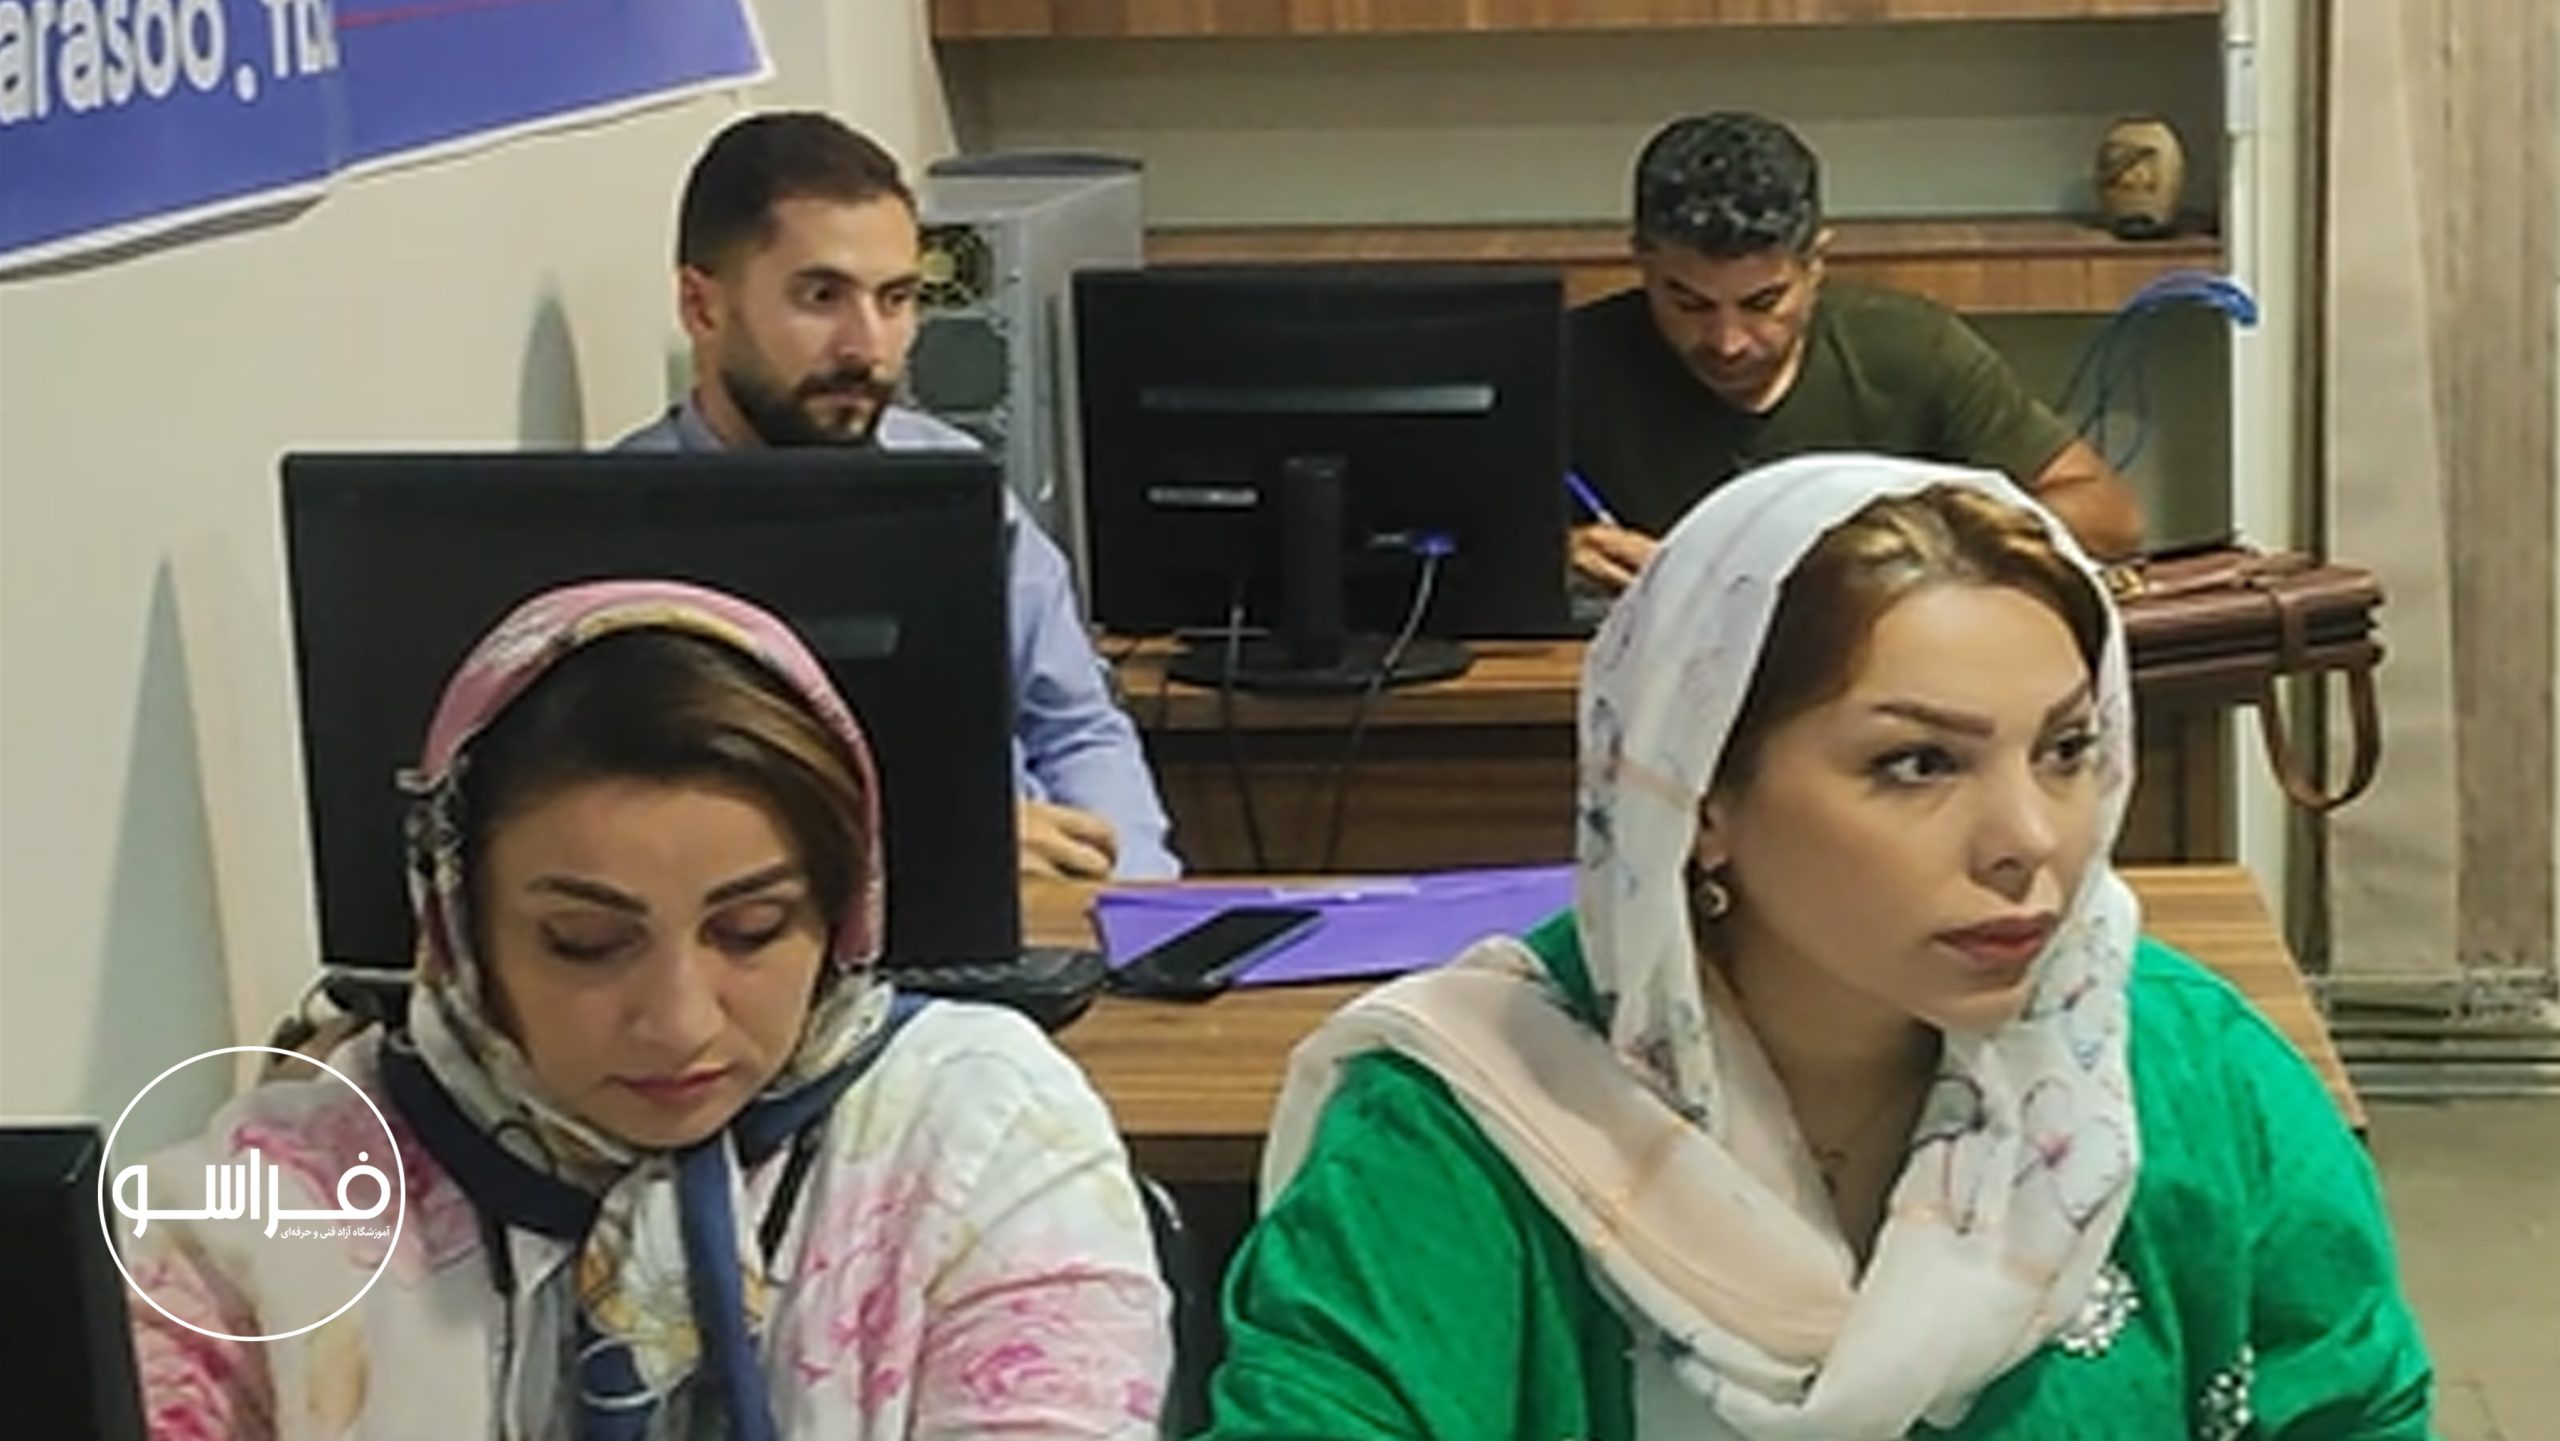 آموزش پداگوژی در تبریز